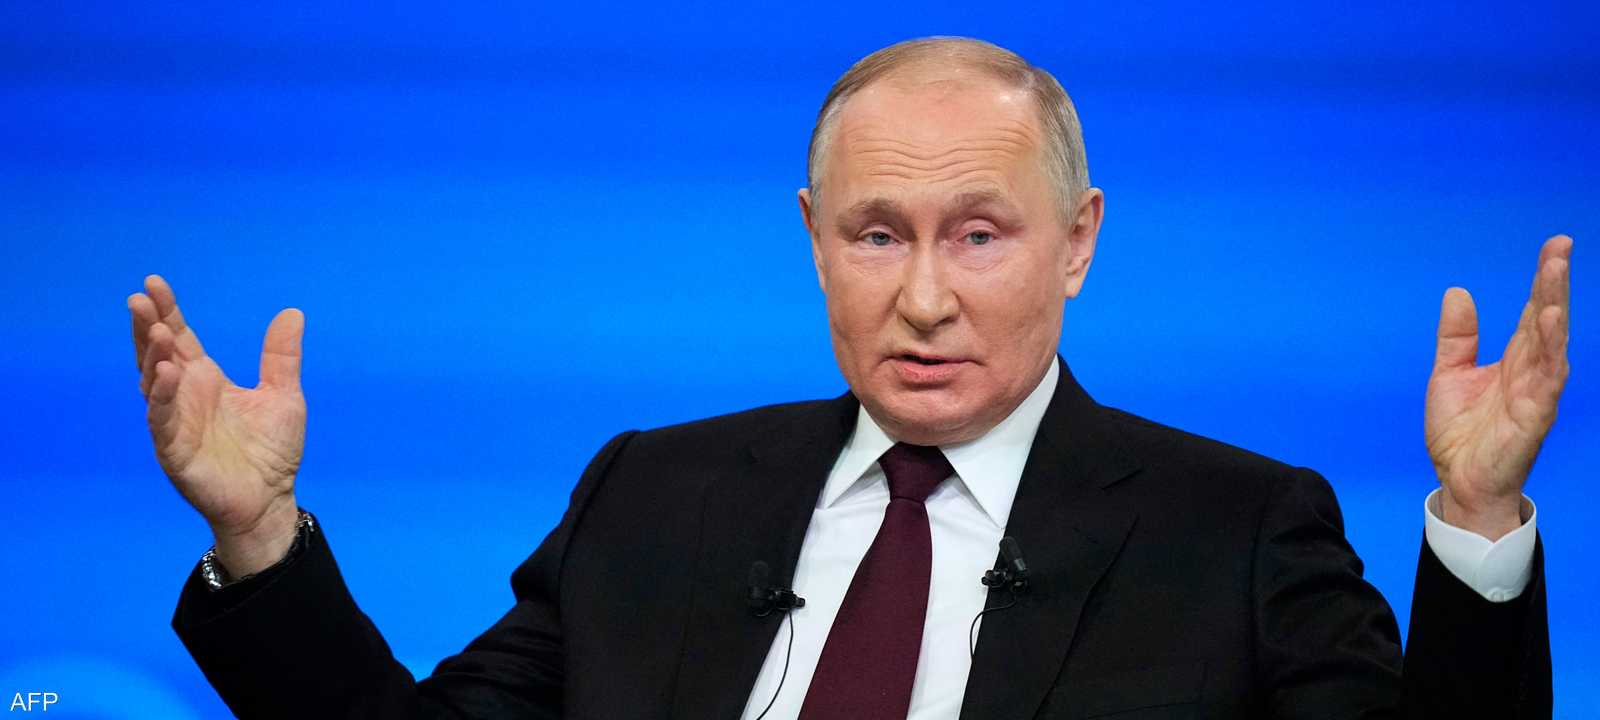 بوتين مصمم على إكمال أهداف الحرب وفق الكرملين